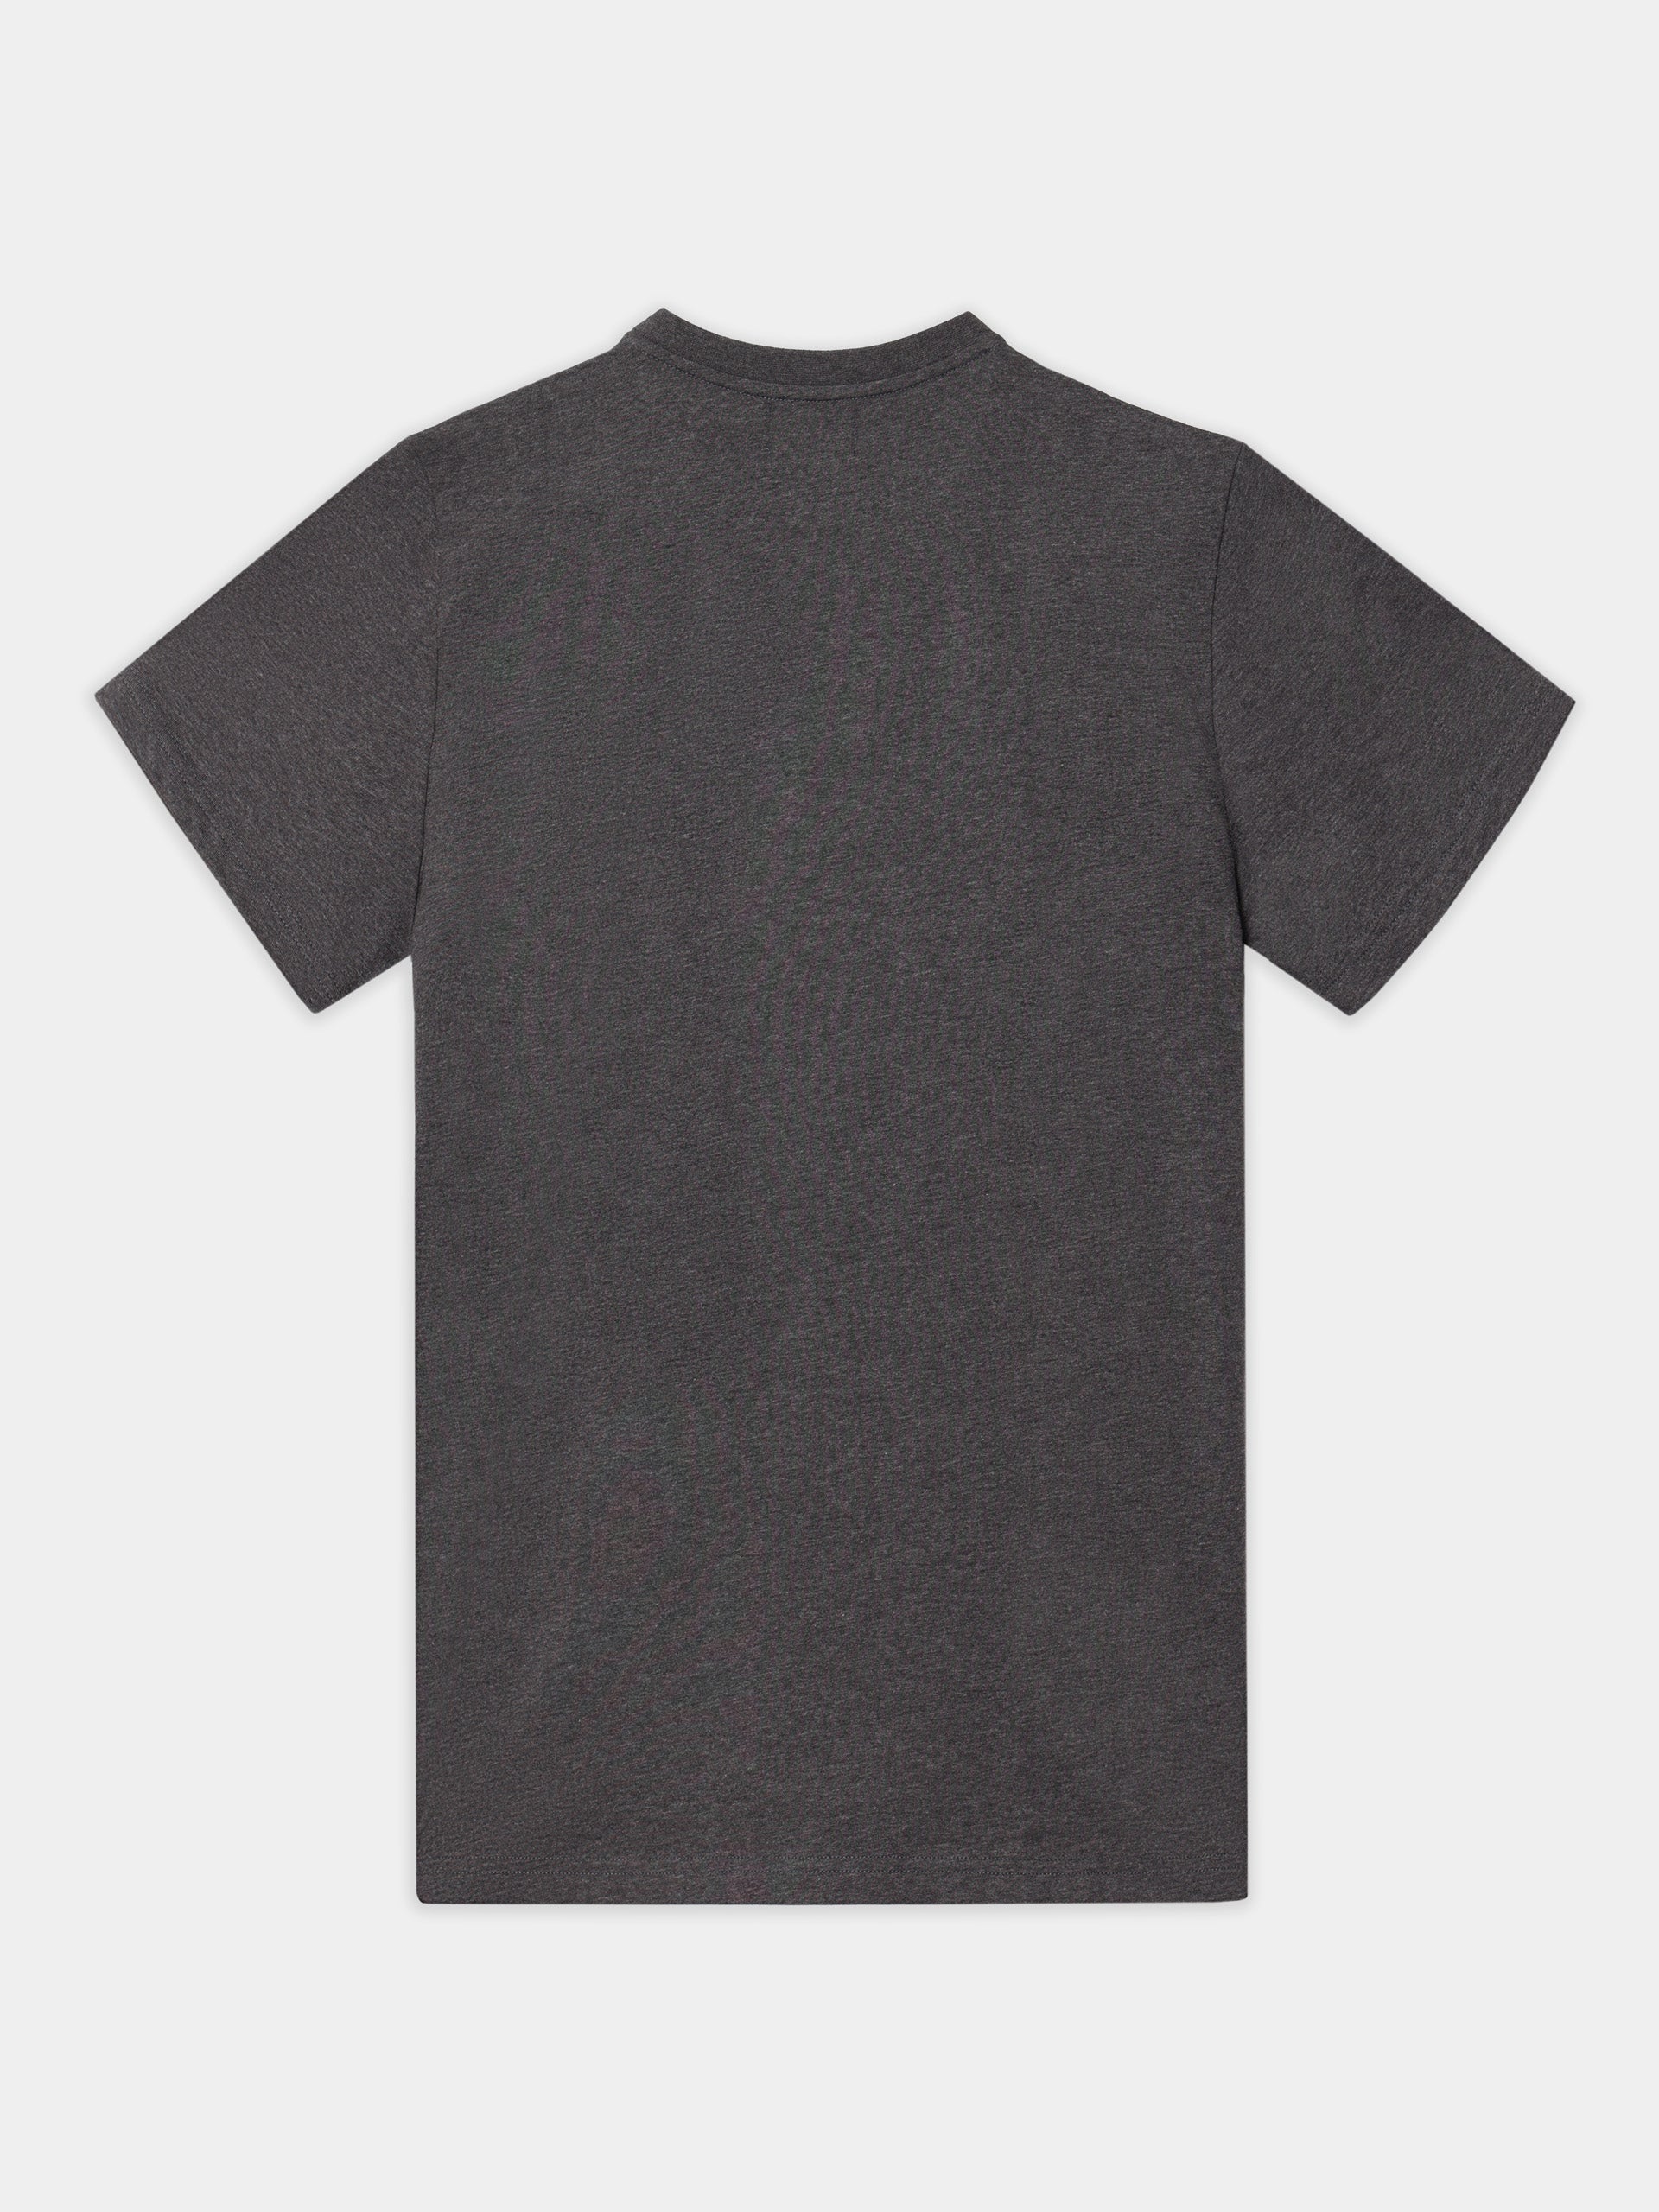 Unique slim gray t-shirt